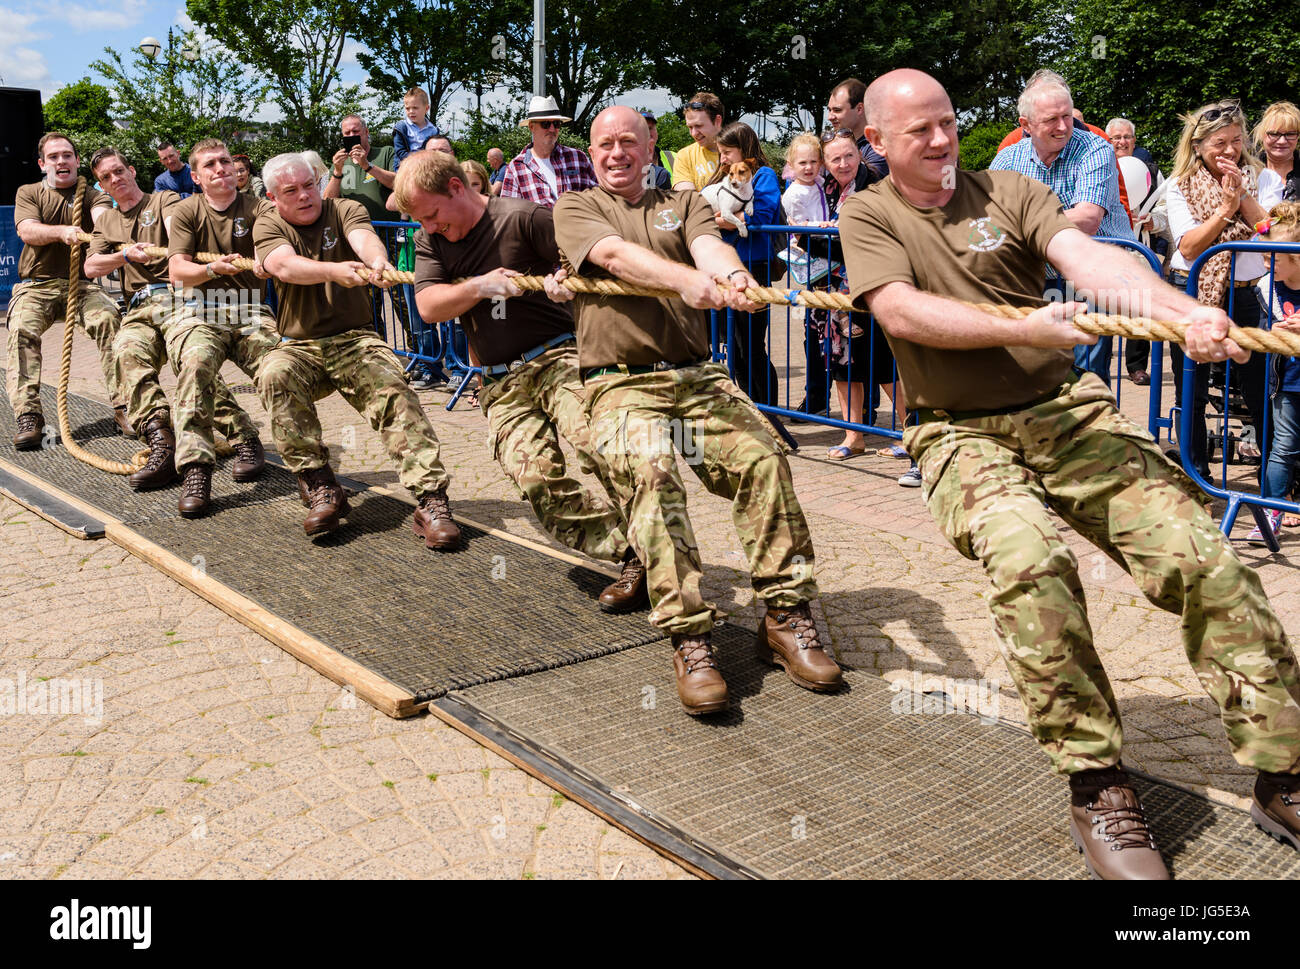 Los soldados toman parte en un tug-o-war la prueba de fuerza. Foto de stock